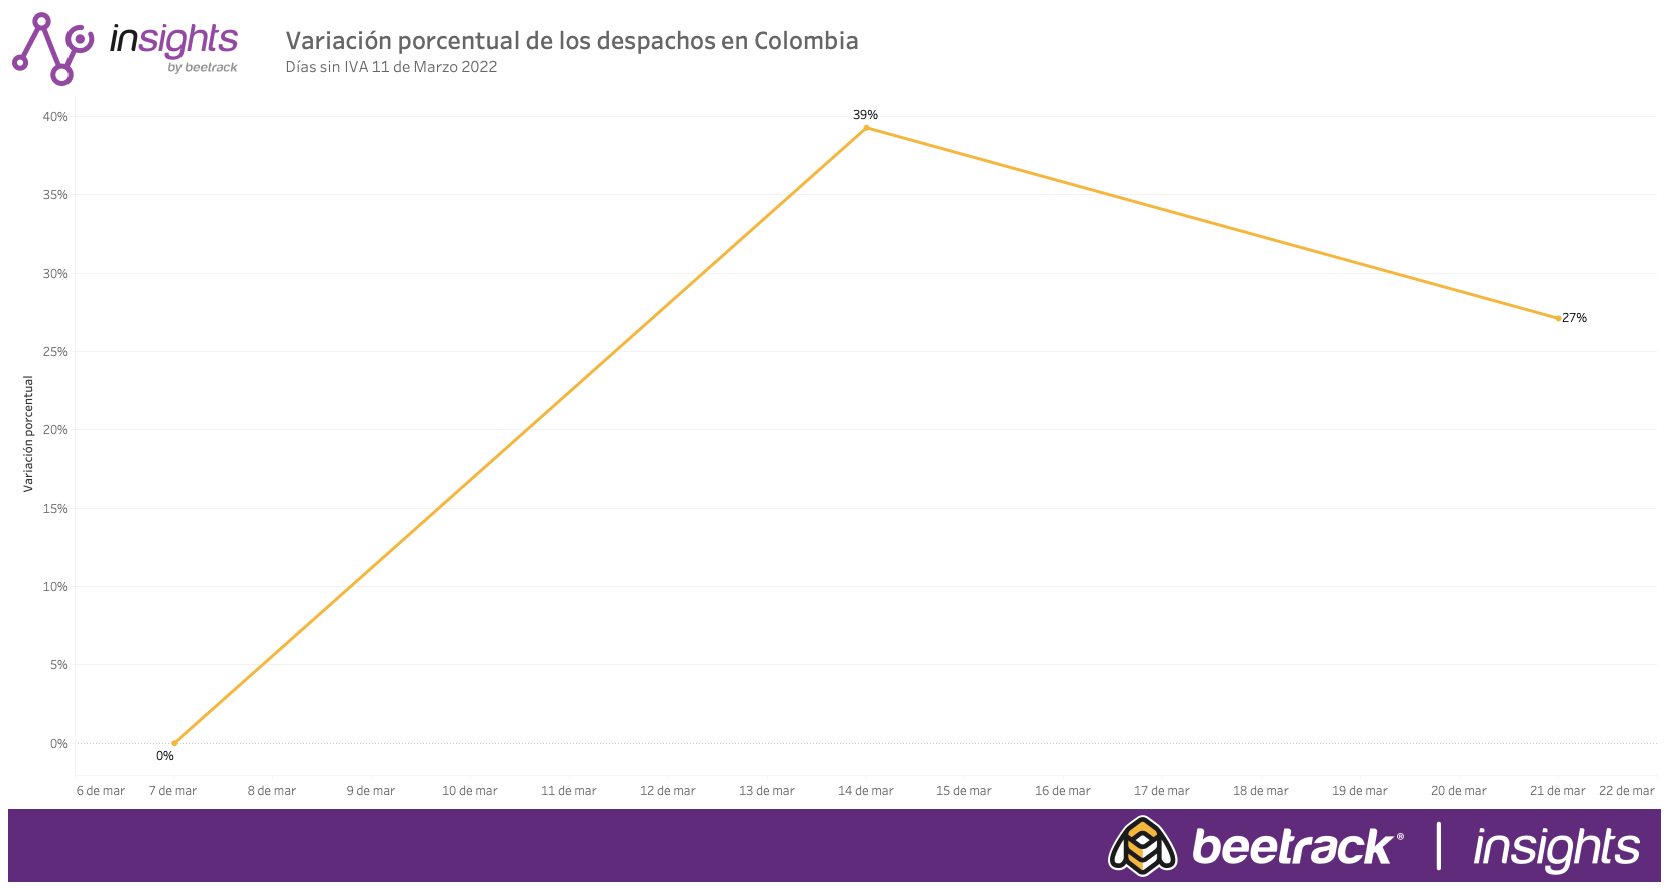 Día sin IVA en Colombia: Aumentaron casi en un 40% los despachos tras primera semana del evento